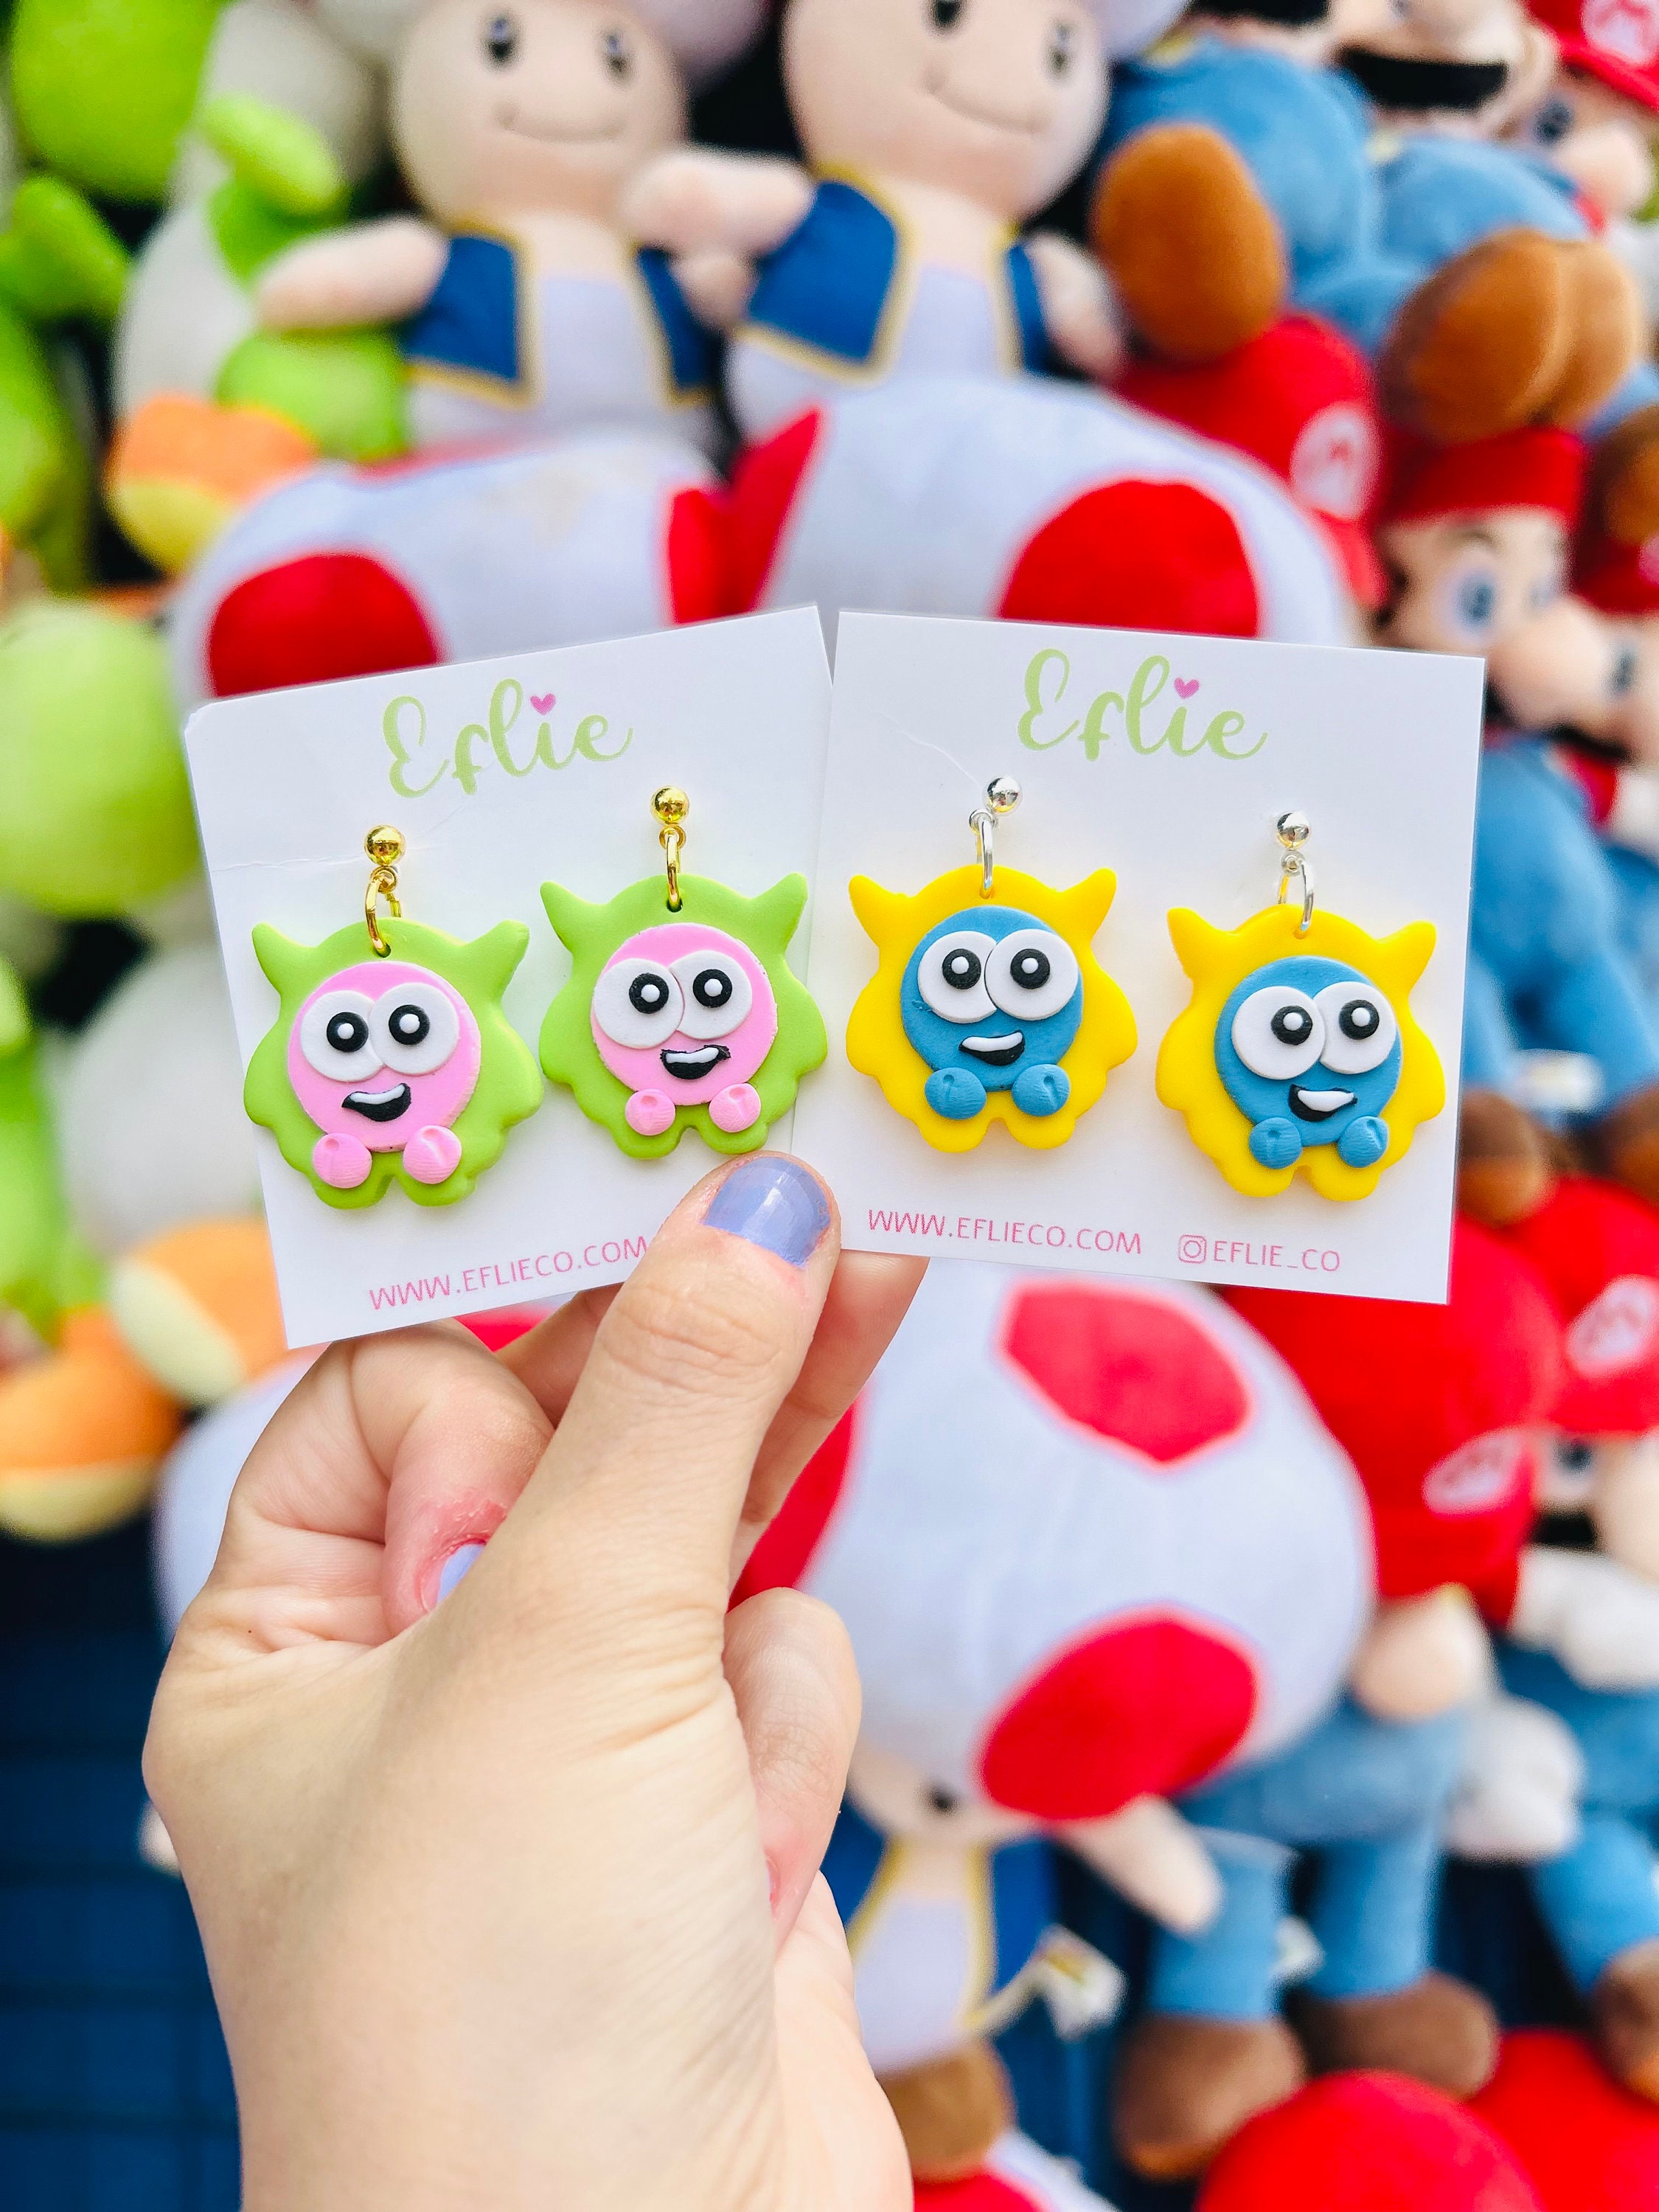 Heart Eyes Emoji Plush Arcade Claw Machine Prize Stuffed Animal Nanco Brand  Toy